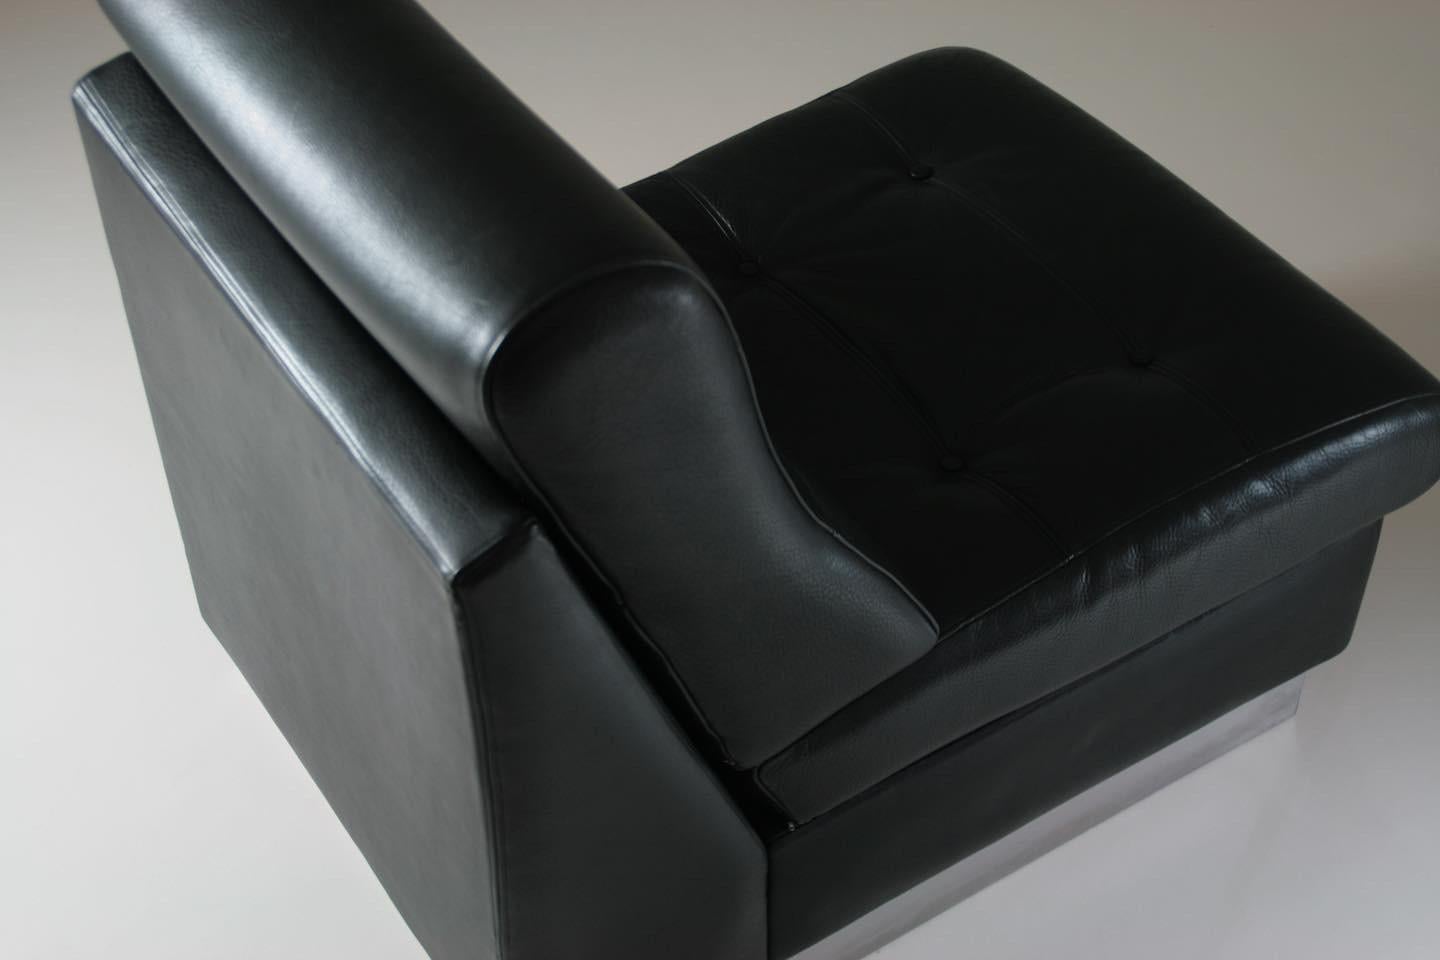 Schwarzer Ledersessel von Jacques Charpentier, hergestellt in Frankreich in den 1970er Jahren. Verchromtes Metallgestell, auf dem der hochwertige, dicke Ledersitz ruht. Ein oberflächlicher Kratzer und 2 kleine diskrete weiße Flecken auf der